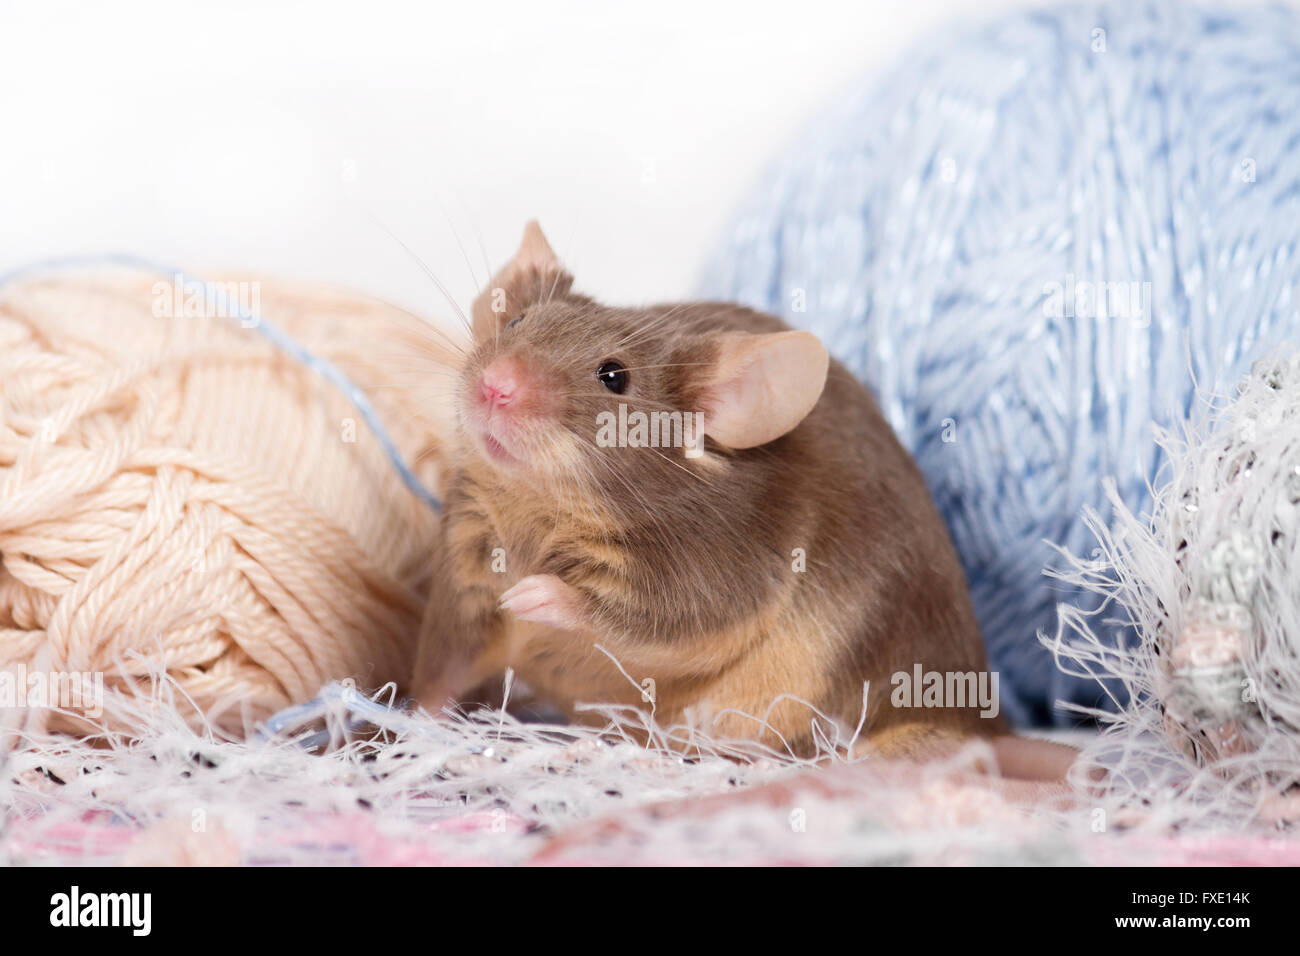 Drôle de souris domestique est caché parmi les écheveaux de fil. Le fil est bleu, beige, rose et duveteux. Souris a moustaches broussailleuses. Banque D'Images